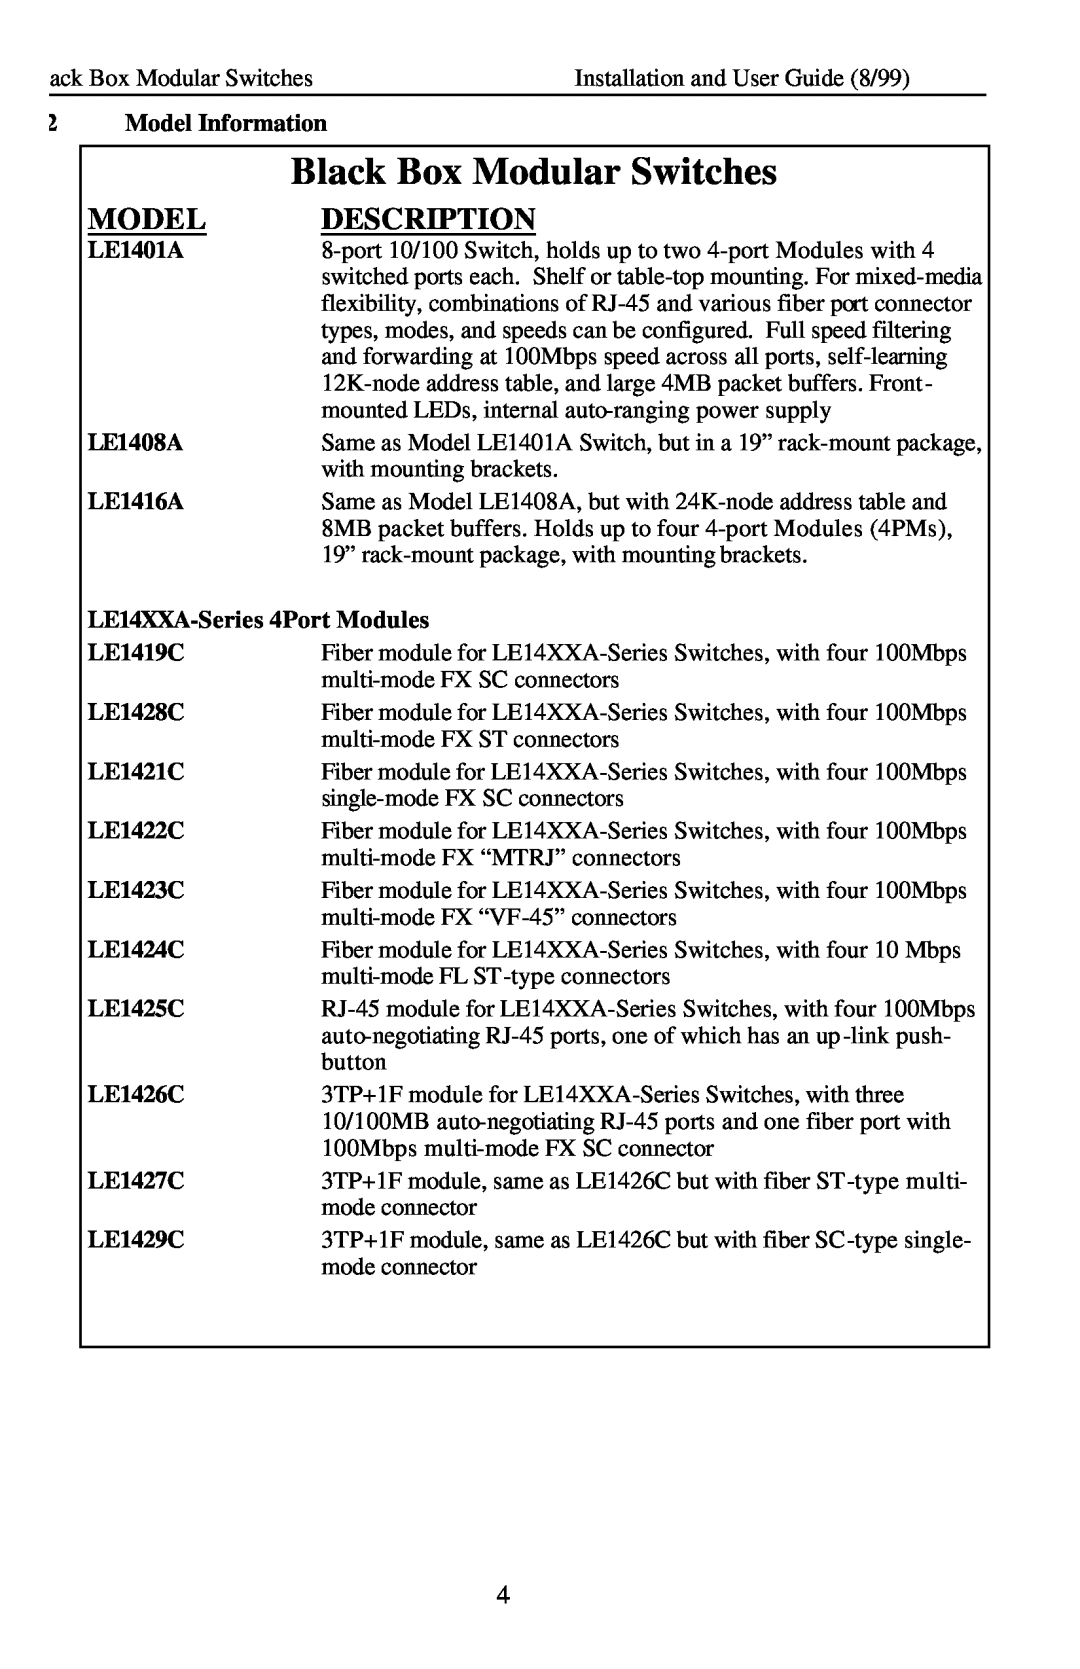 Black Box Description, Black Box Modular Switches, Model Information, LE1401A, LE1408A, LE1416A, LE1419C, LE1428C 